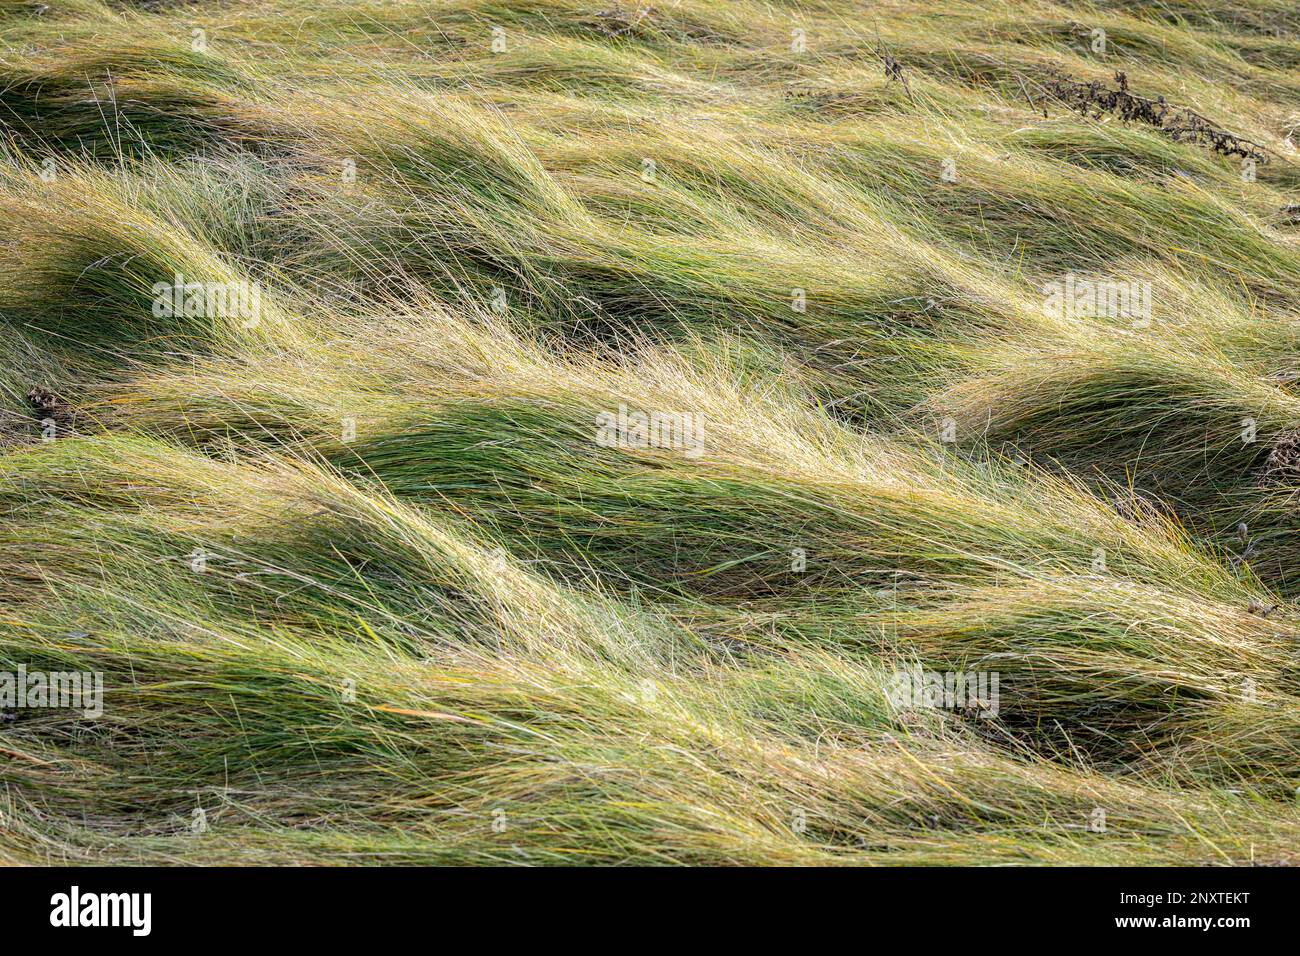 Photo de stock de graminées balayées par le vent créant une texture de la nature. Banque D'Images